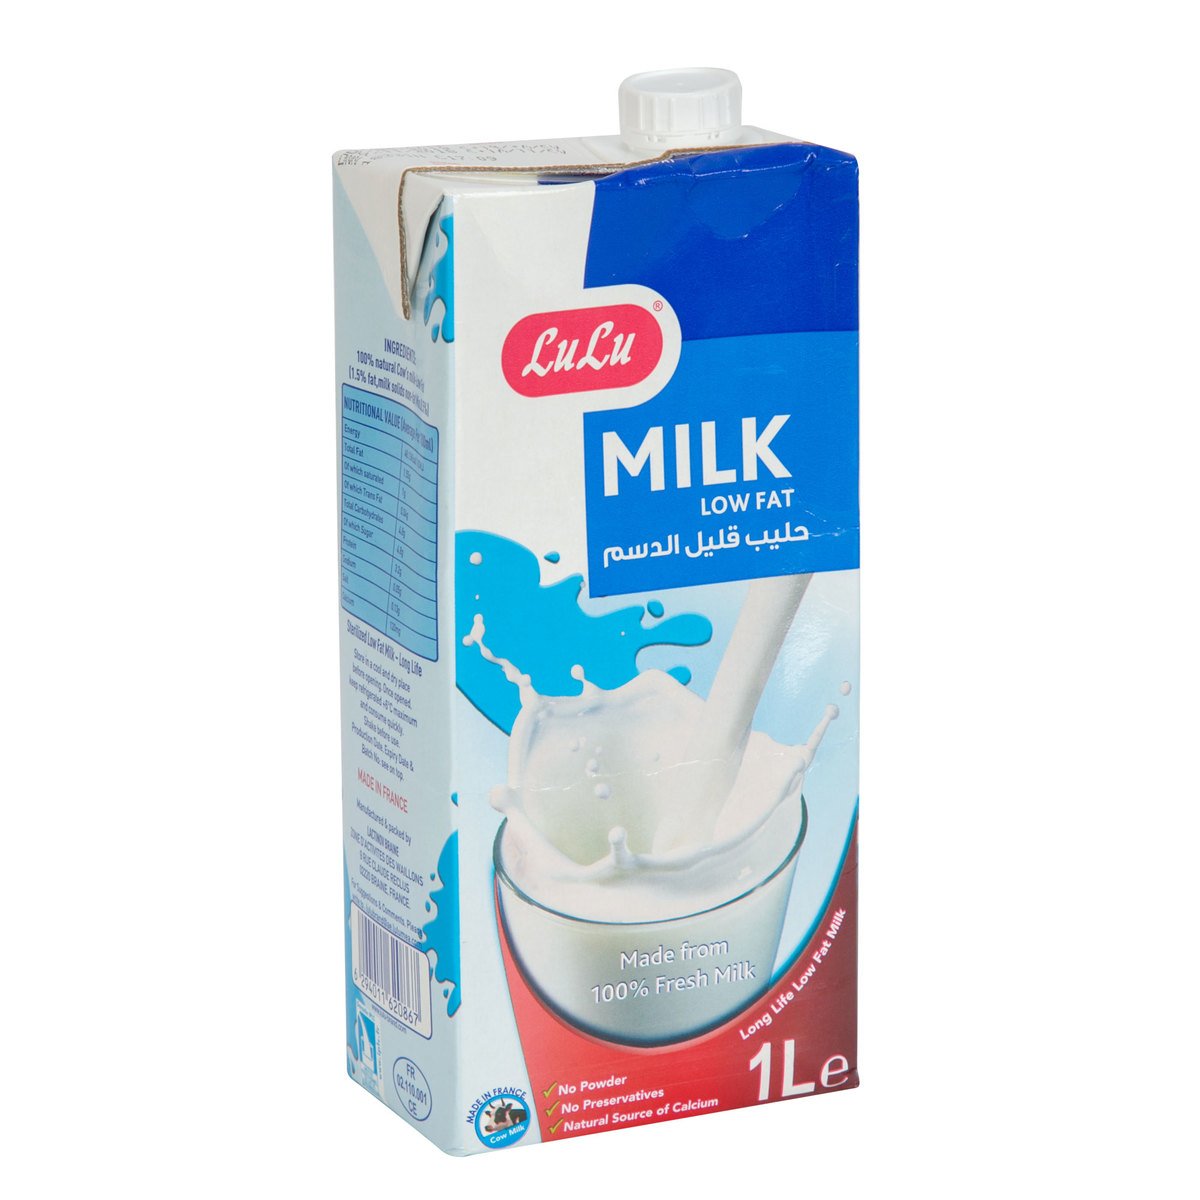 Lulu Milk Low Fat 4 x 1 Litre